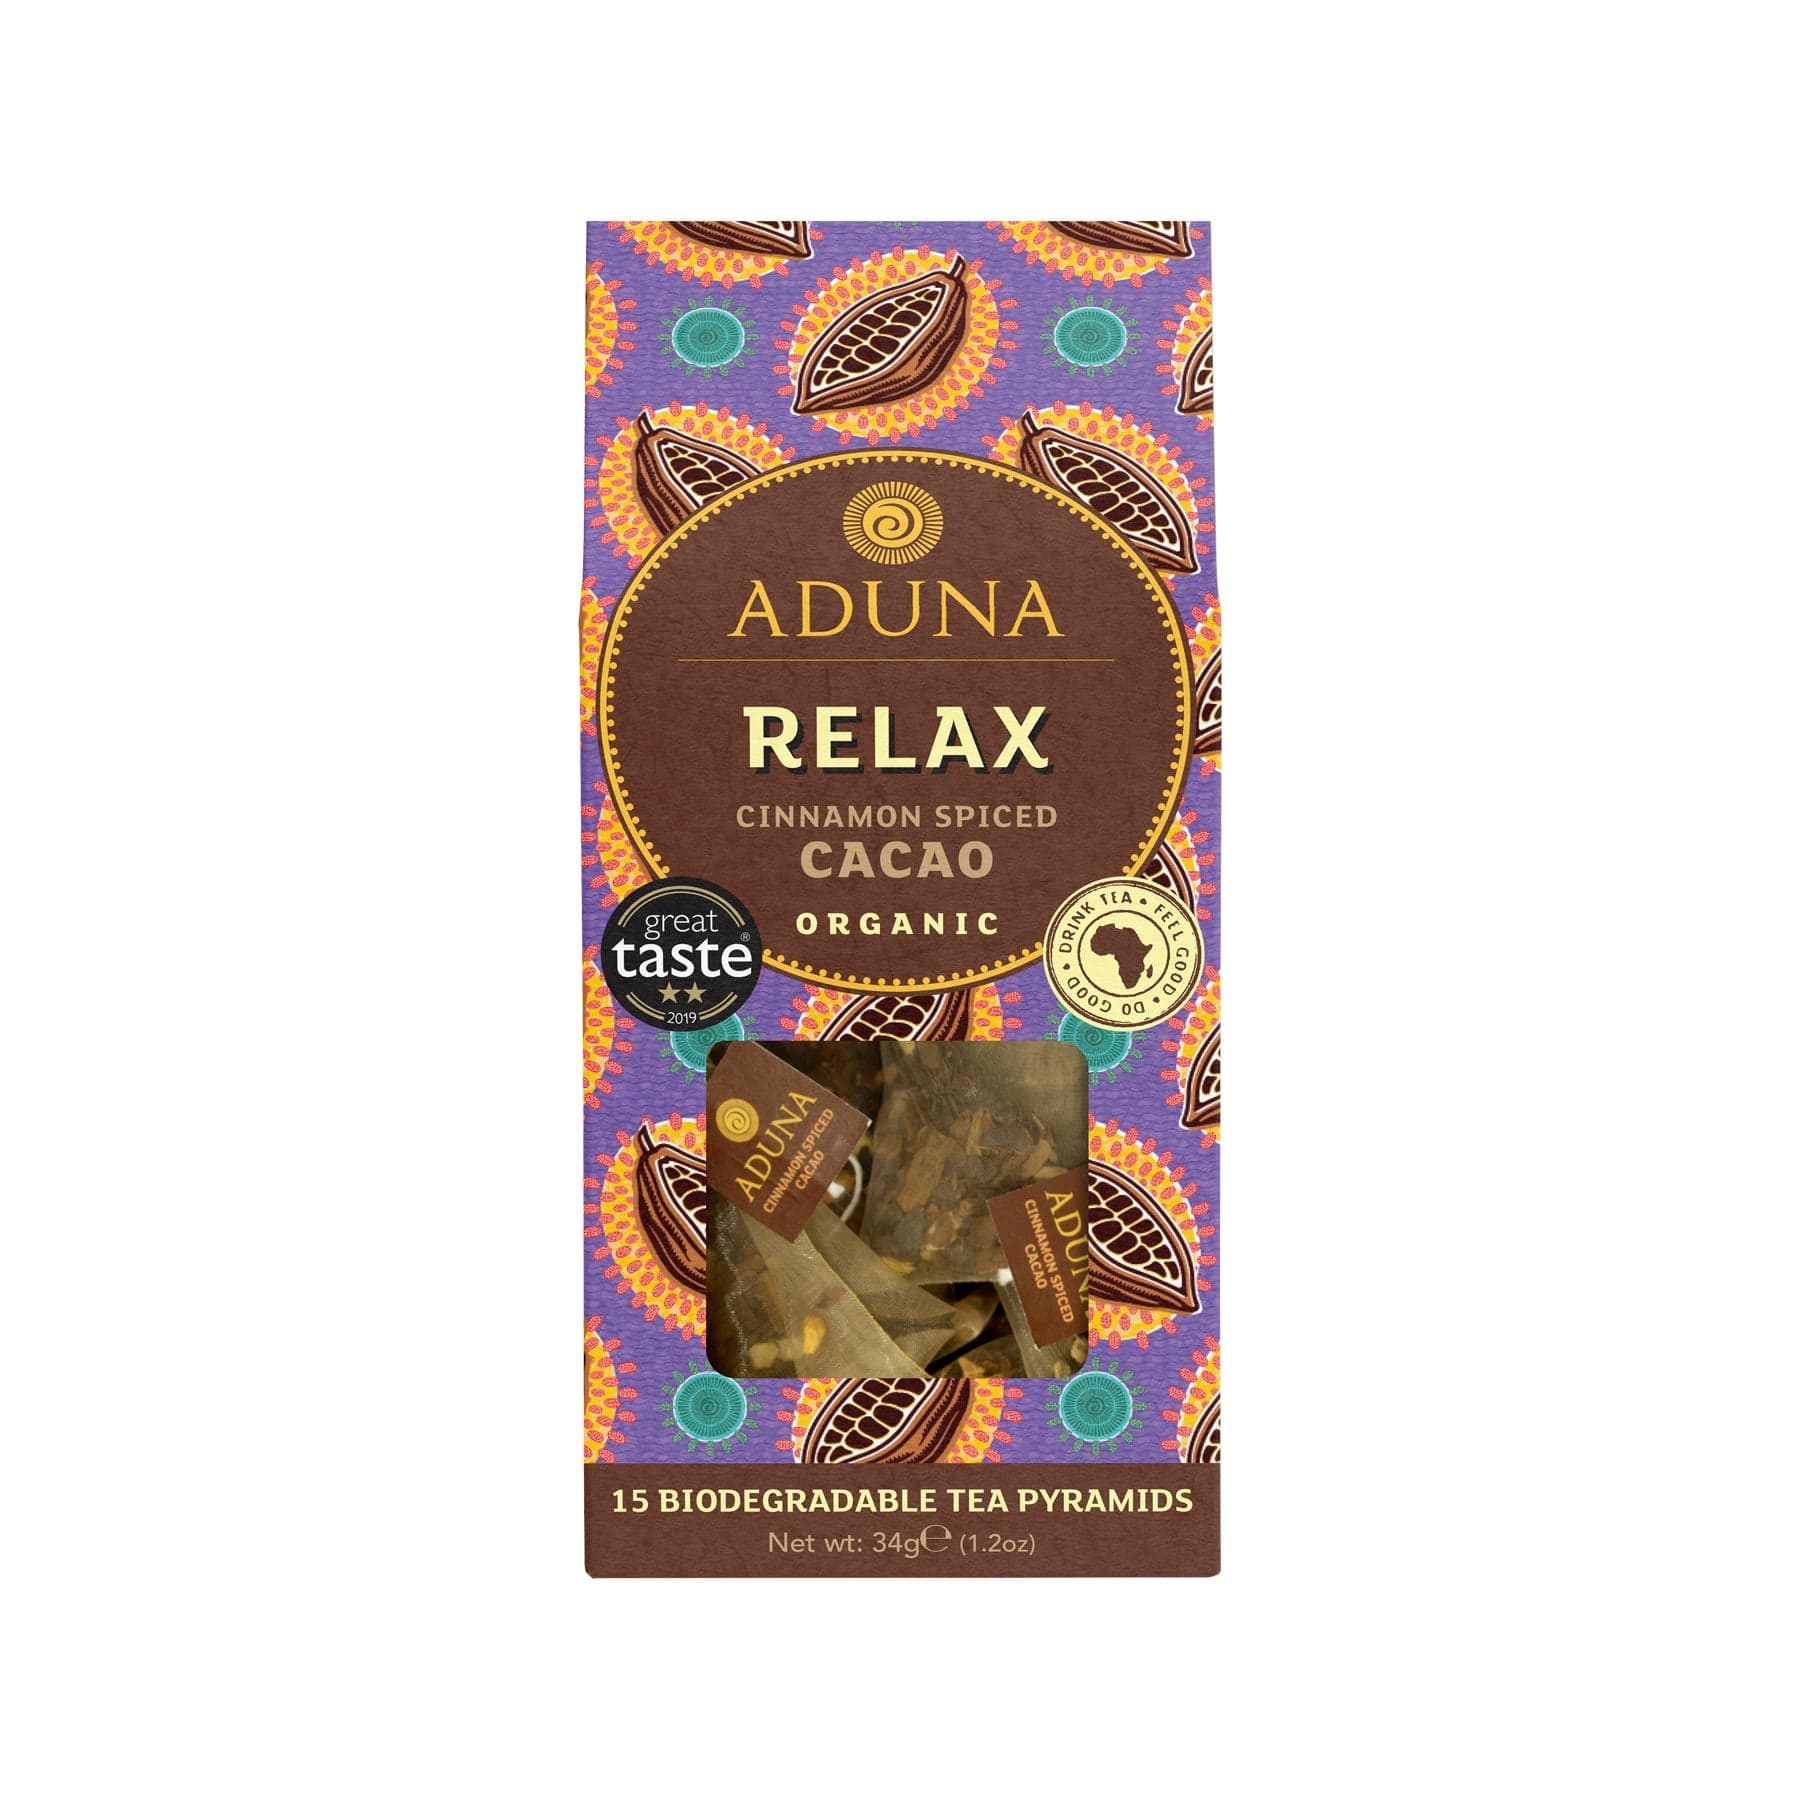 Cacao tea with cinnamon